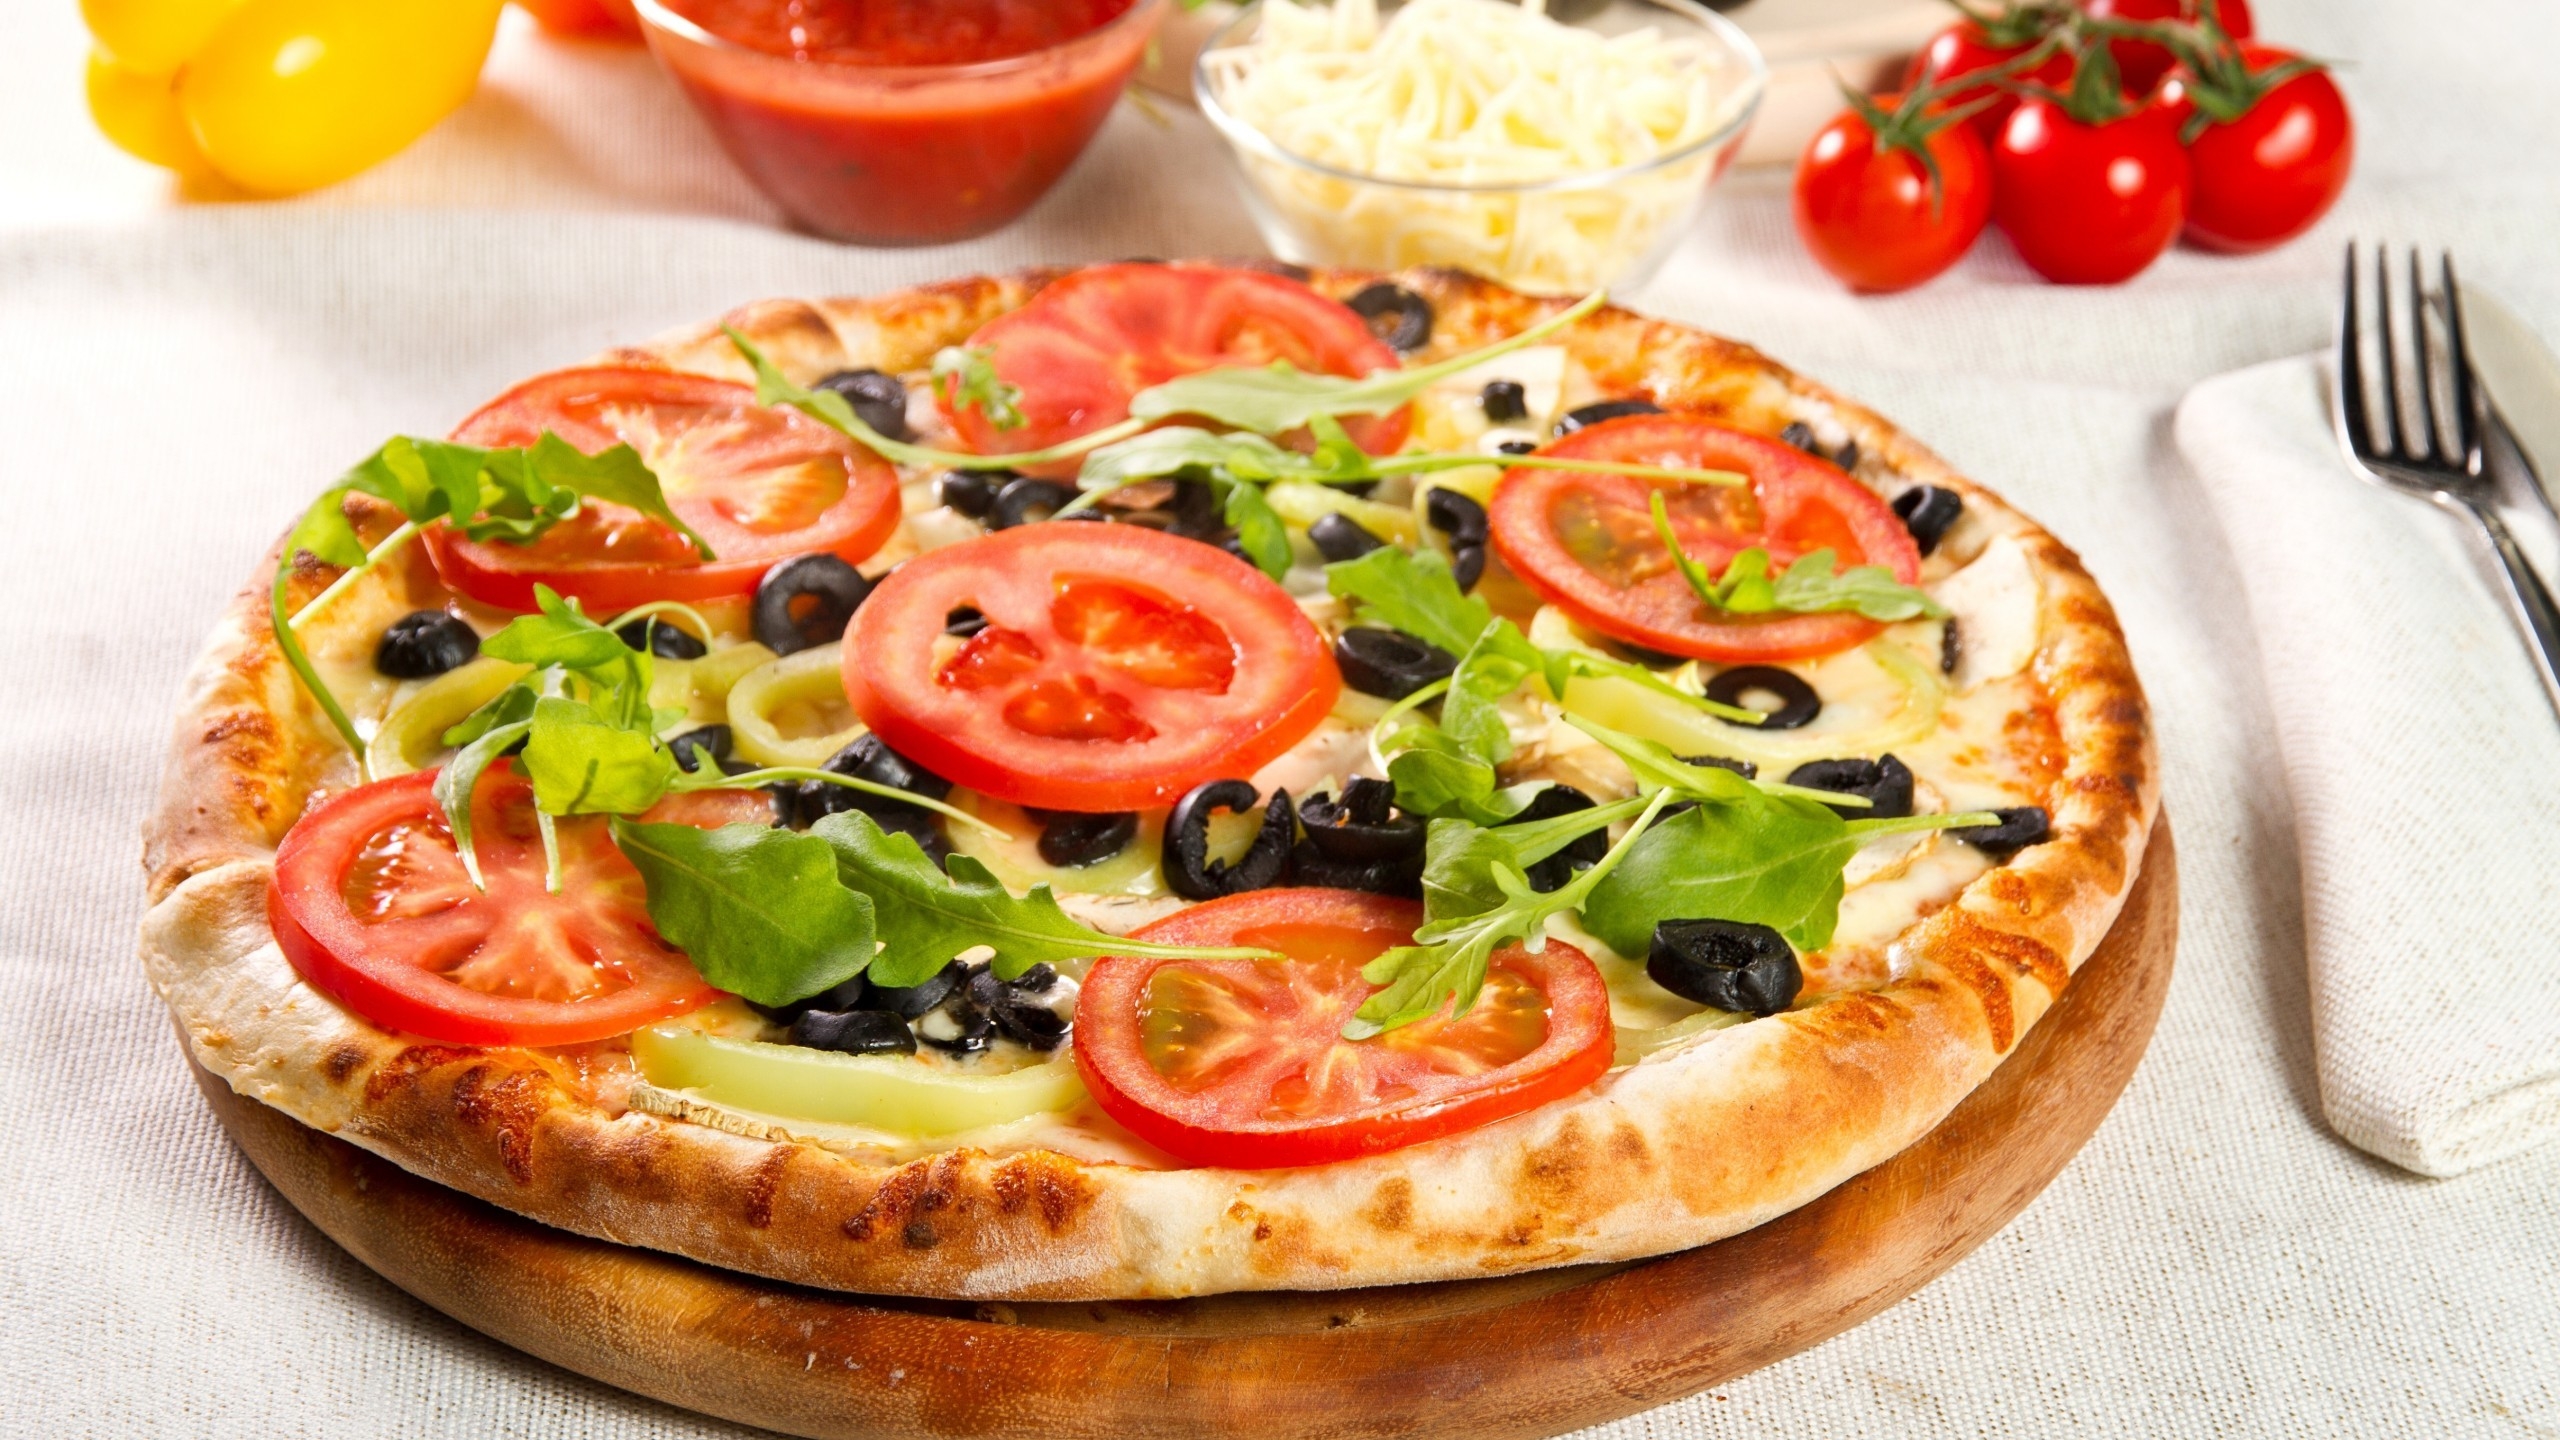 Vegetarian Pizza for 2560x1440 HDTV resolution